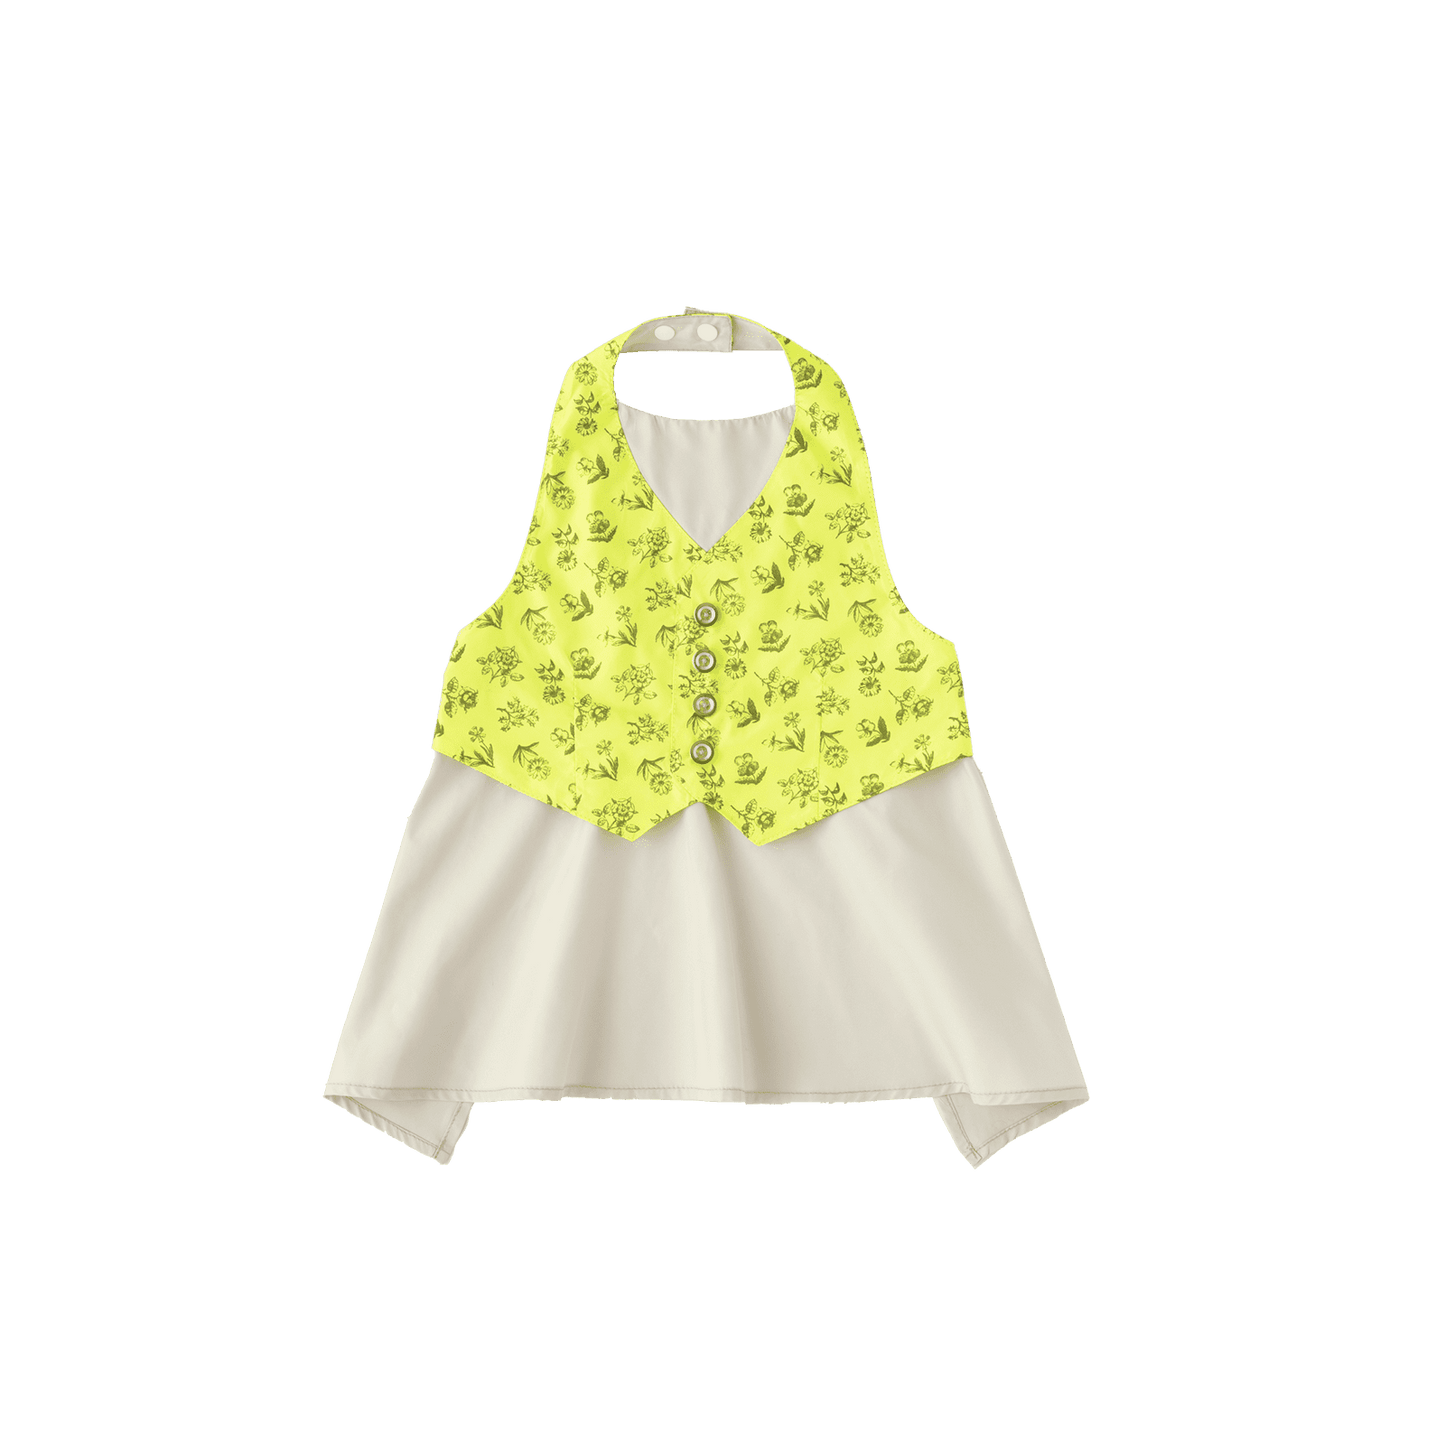 Size 80-90: garcon 5 yellow flower